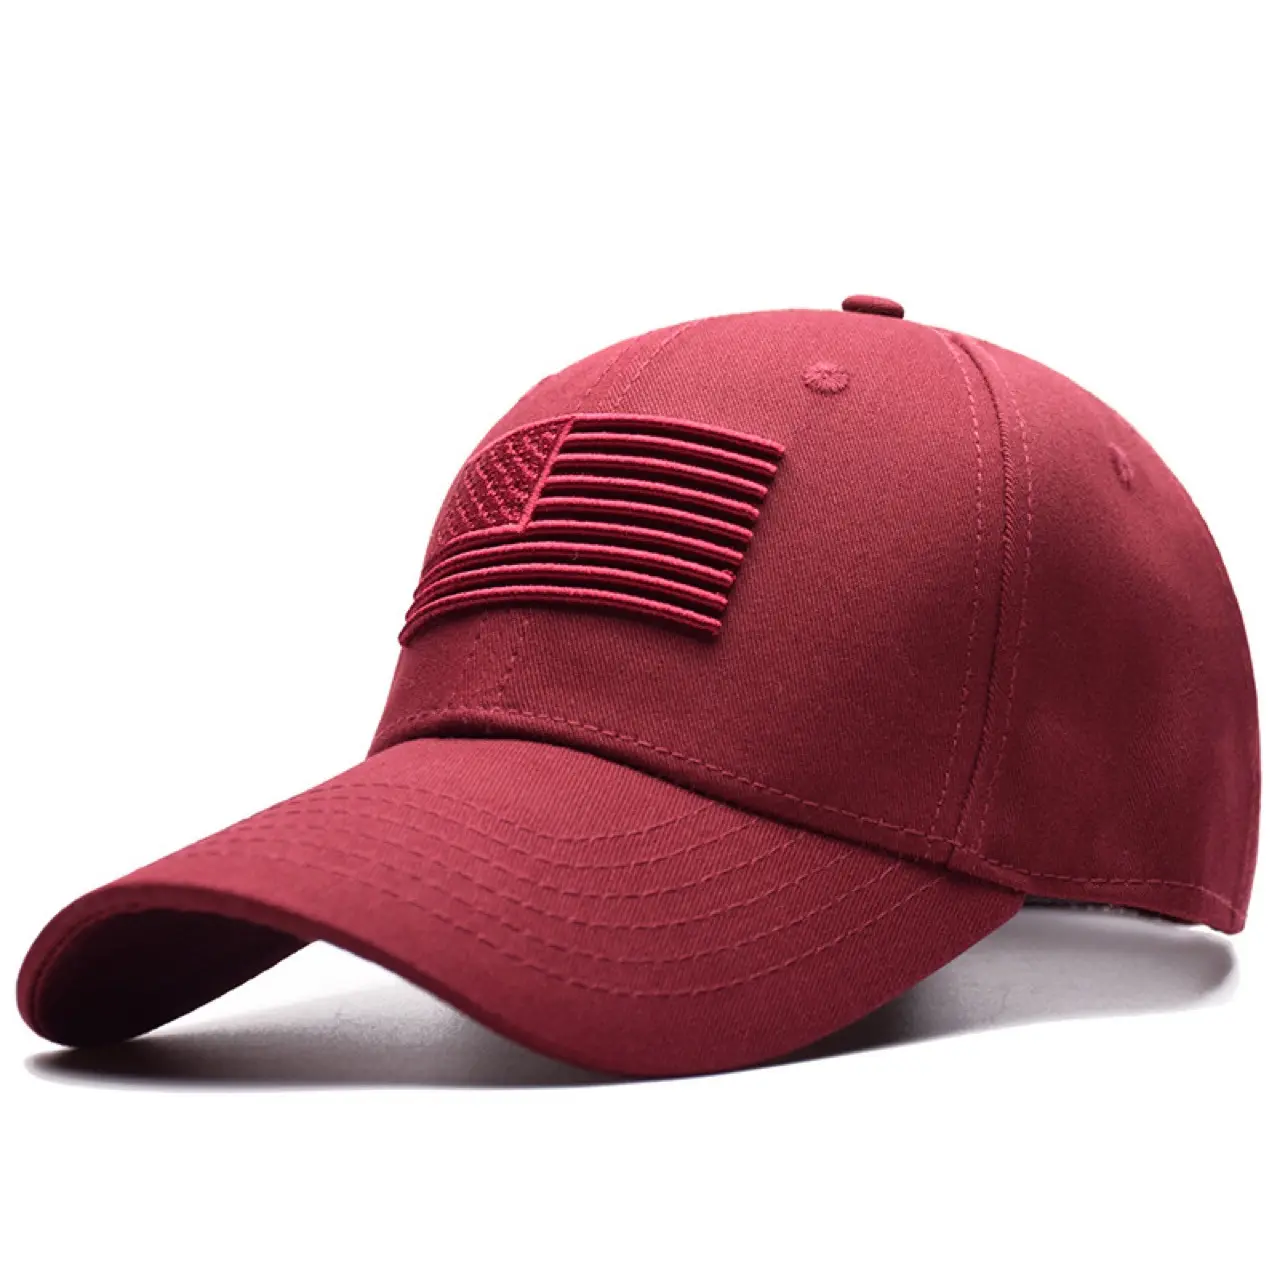 الأمريكي الجديد العلم المطرزة قبعة بيسبول s منظم عارضة أزياء كاب للرجال والنساء قبعة بيسبول منظم